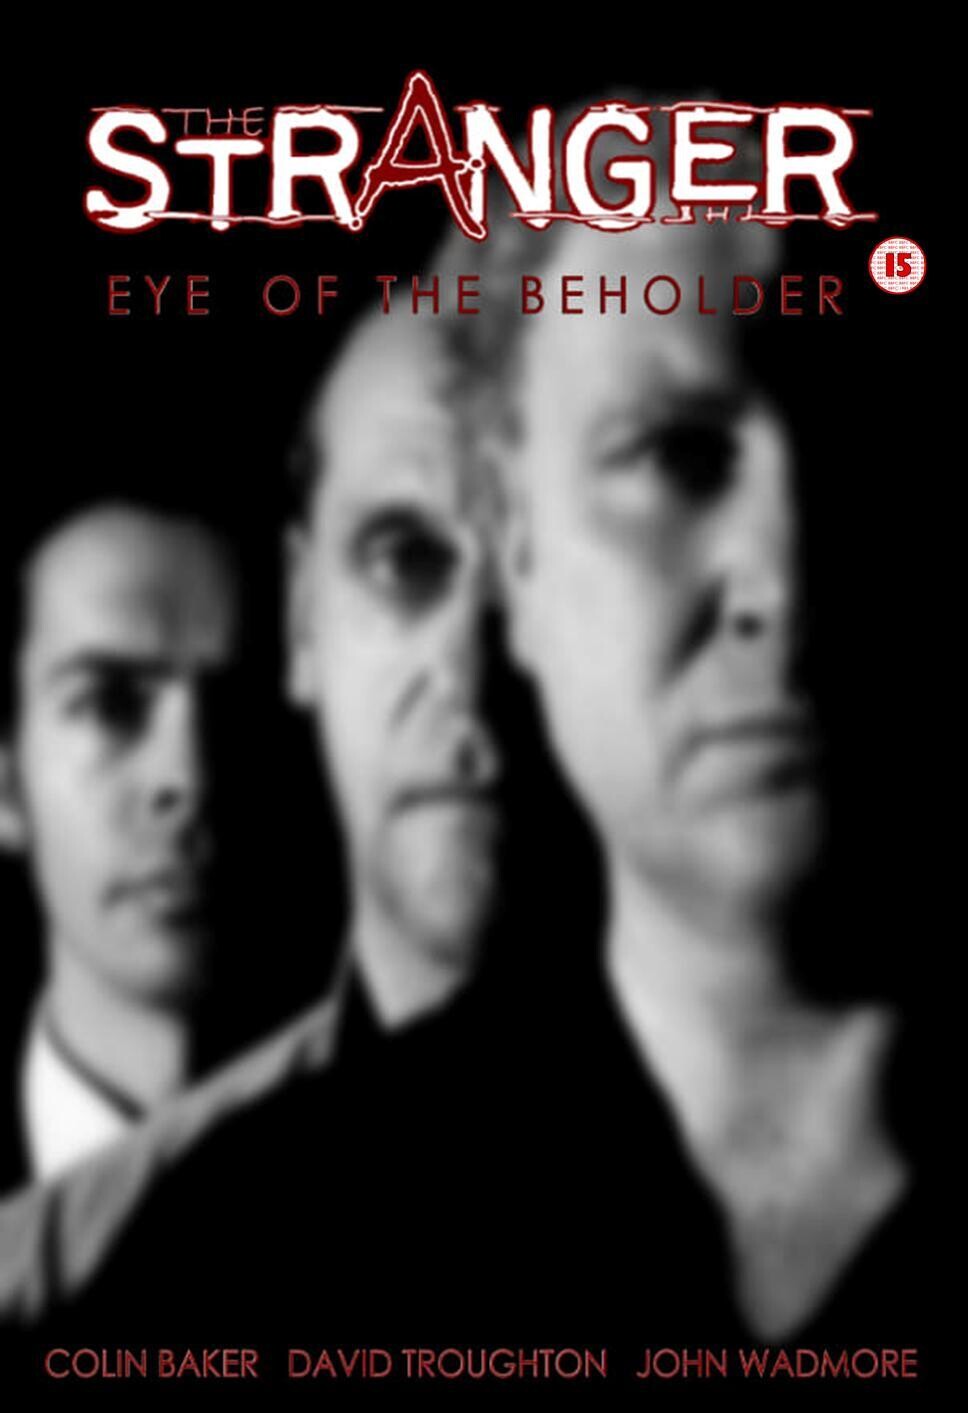 The Stranger: Eye of the Beholder (DVD)